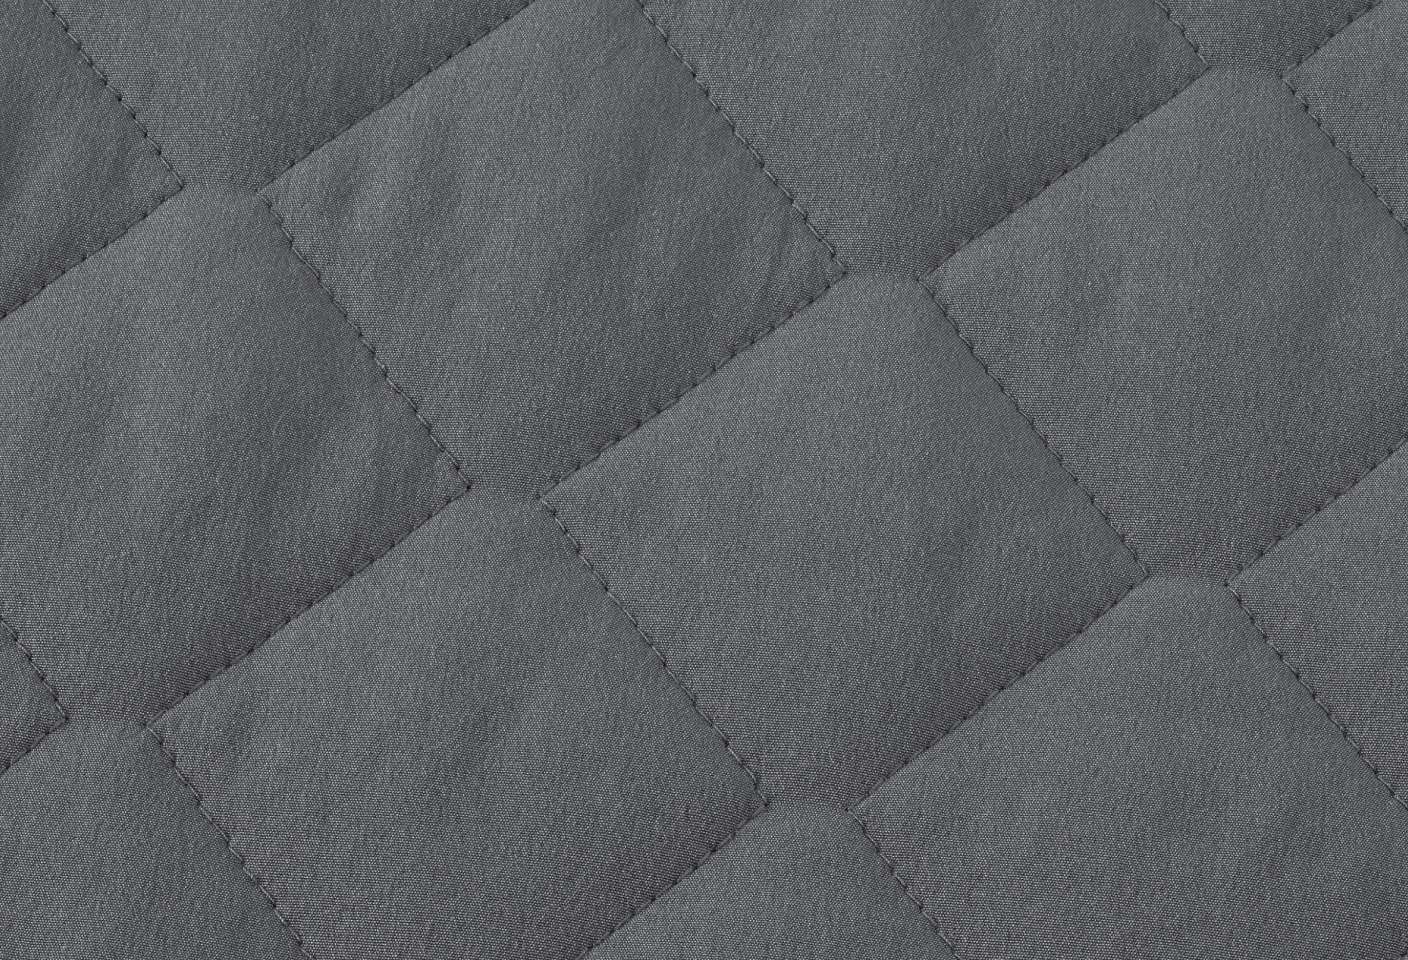 Interior Fabric